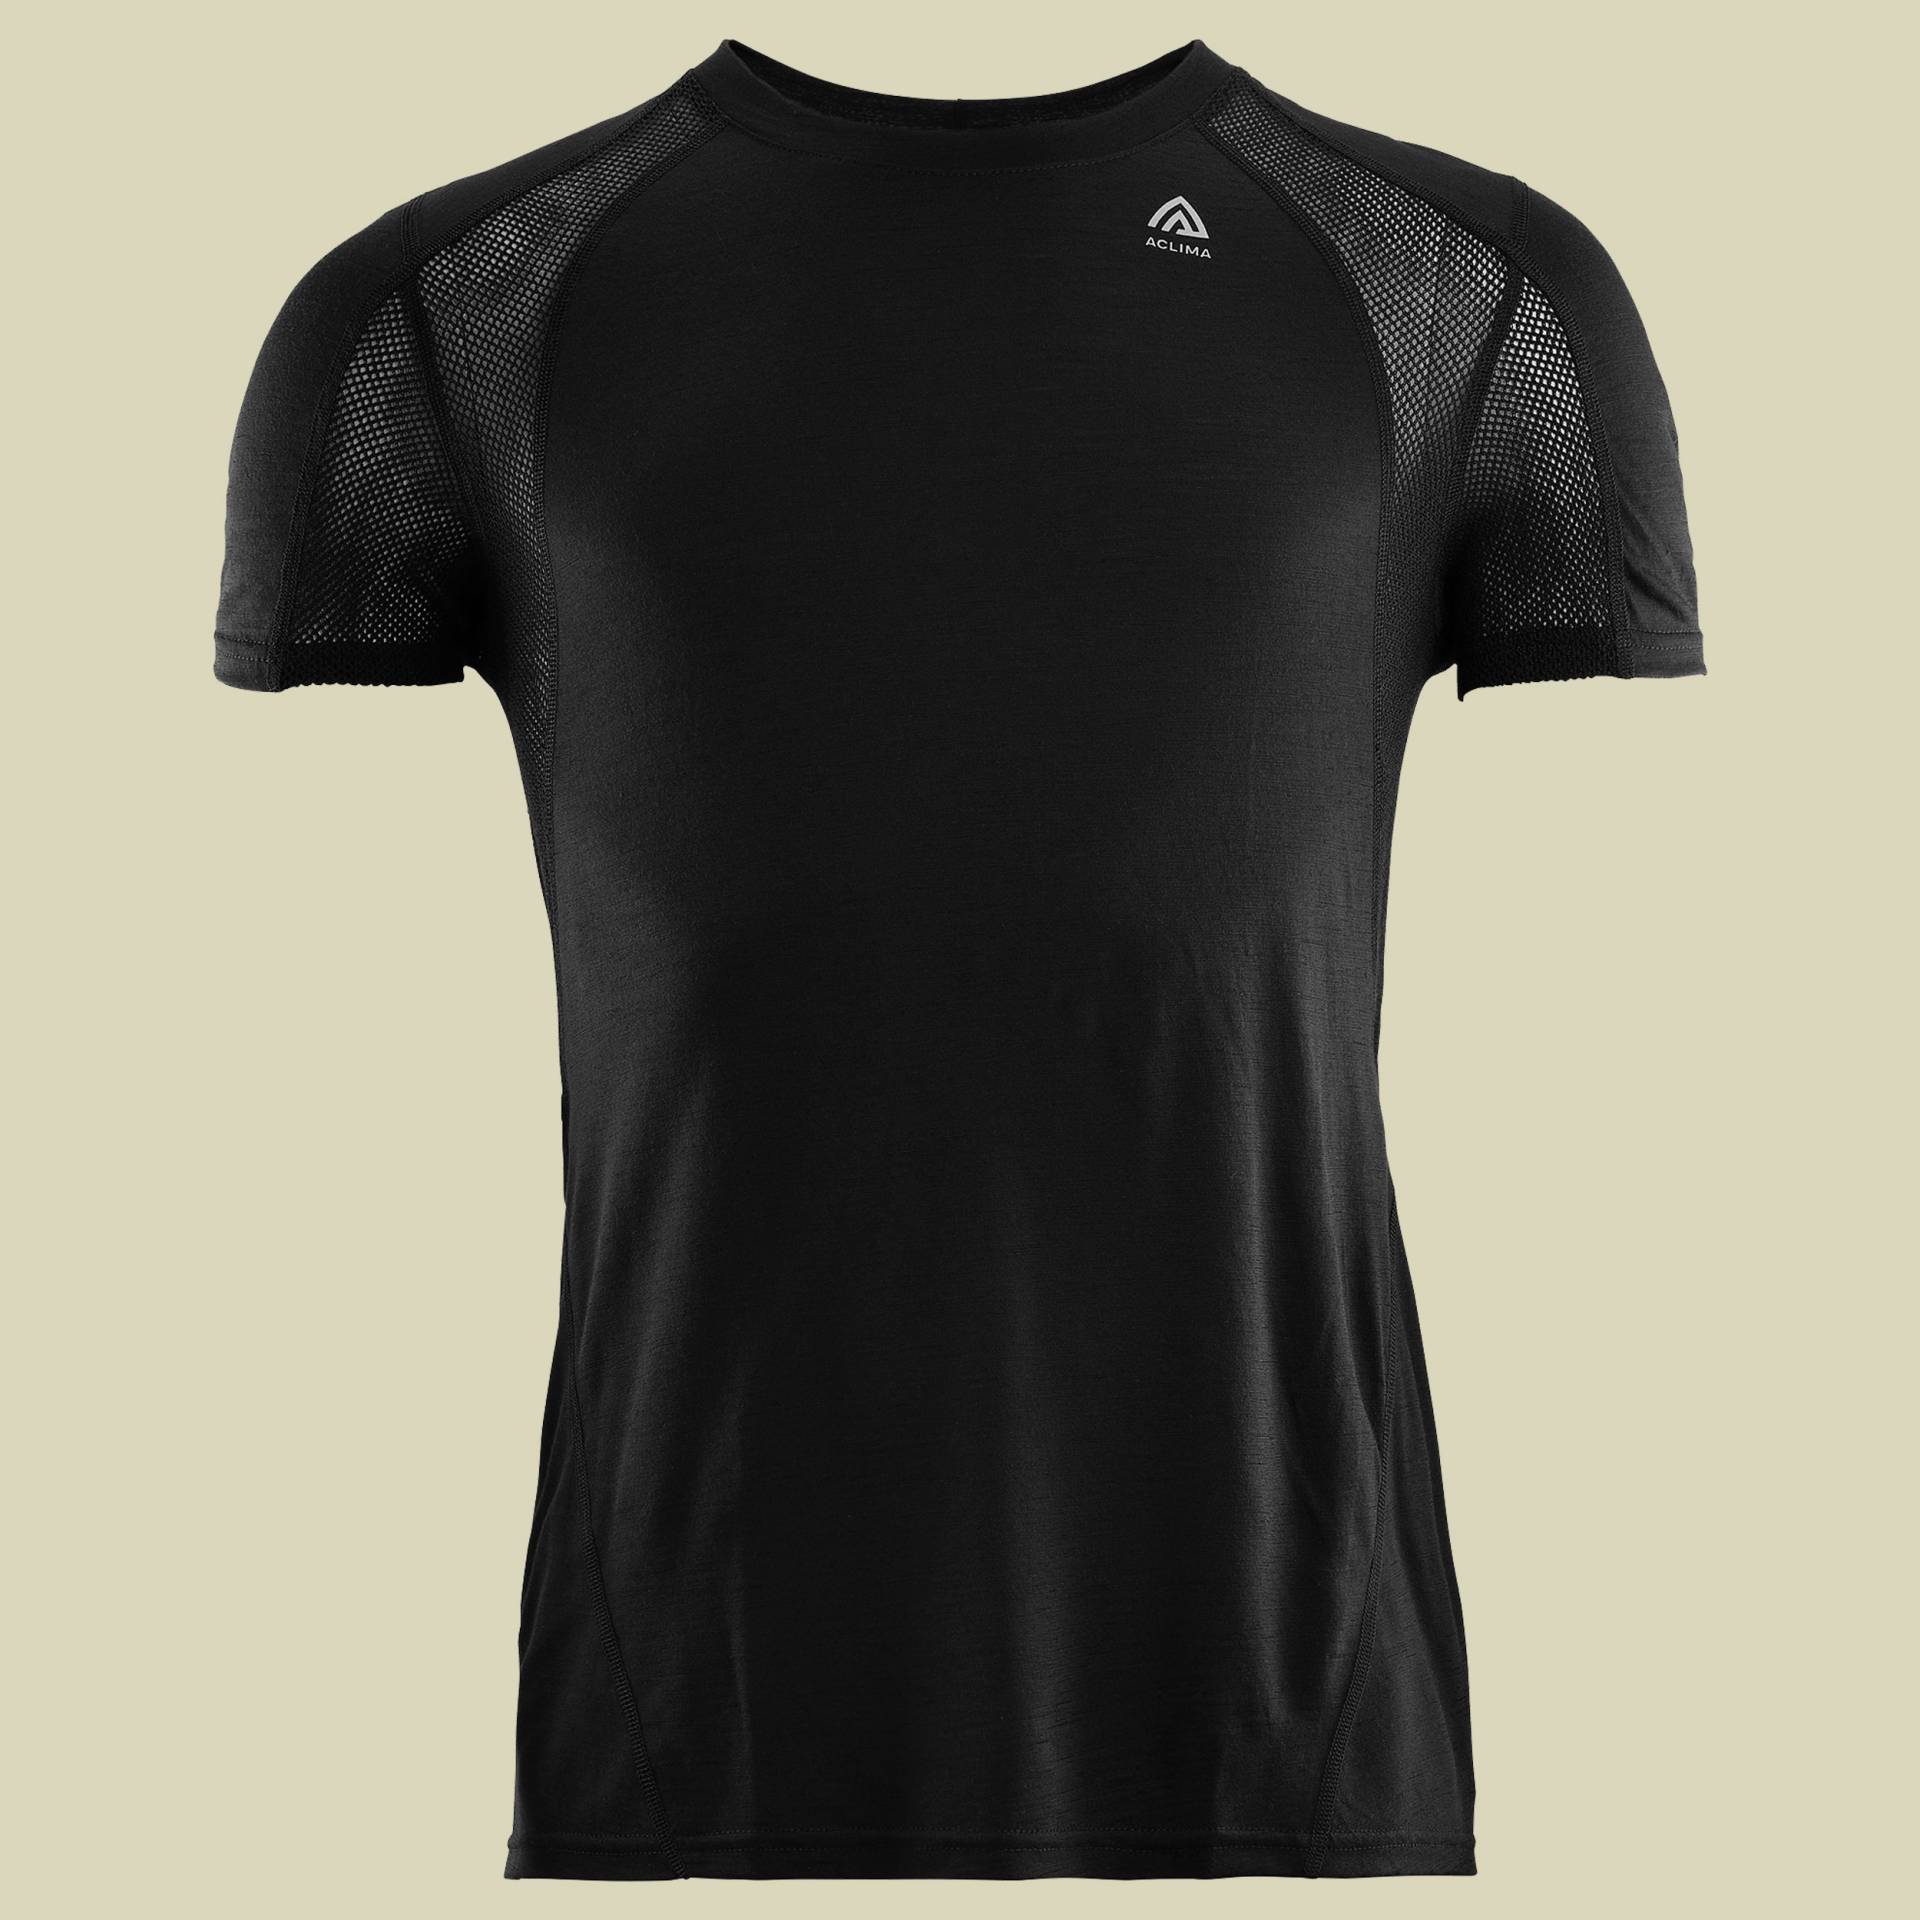 LightWool Sports T-Shirt Men schwarz M - jet black von aclima